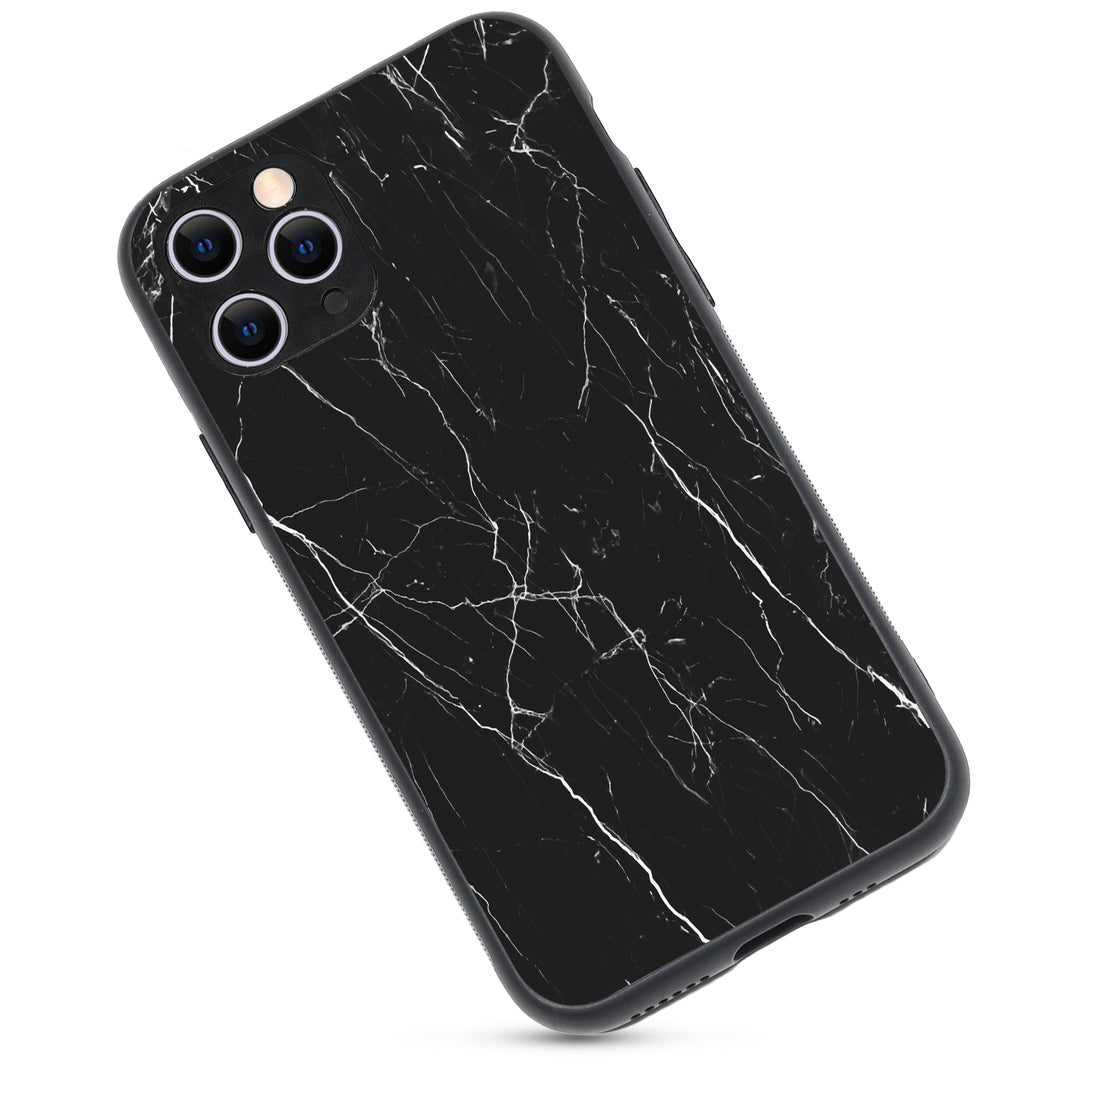 Black Tile Marble iPhone 11 Pro Case